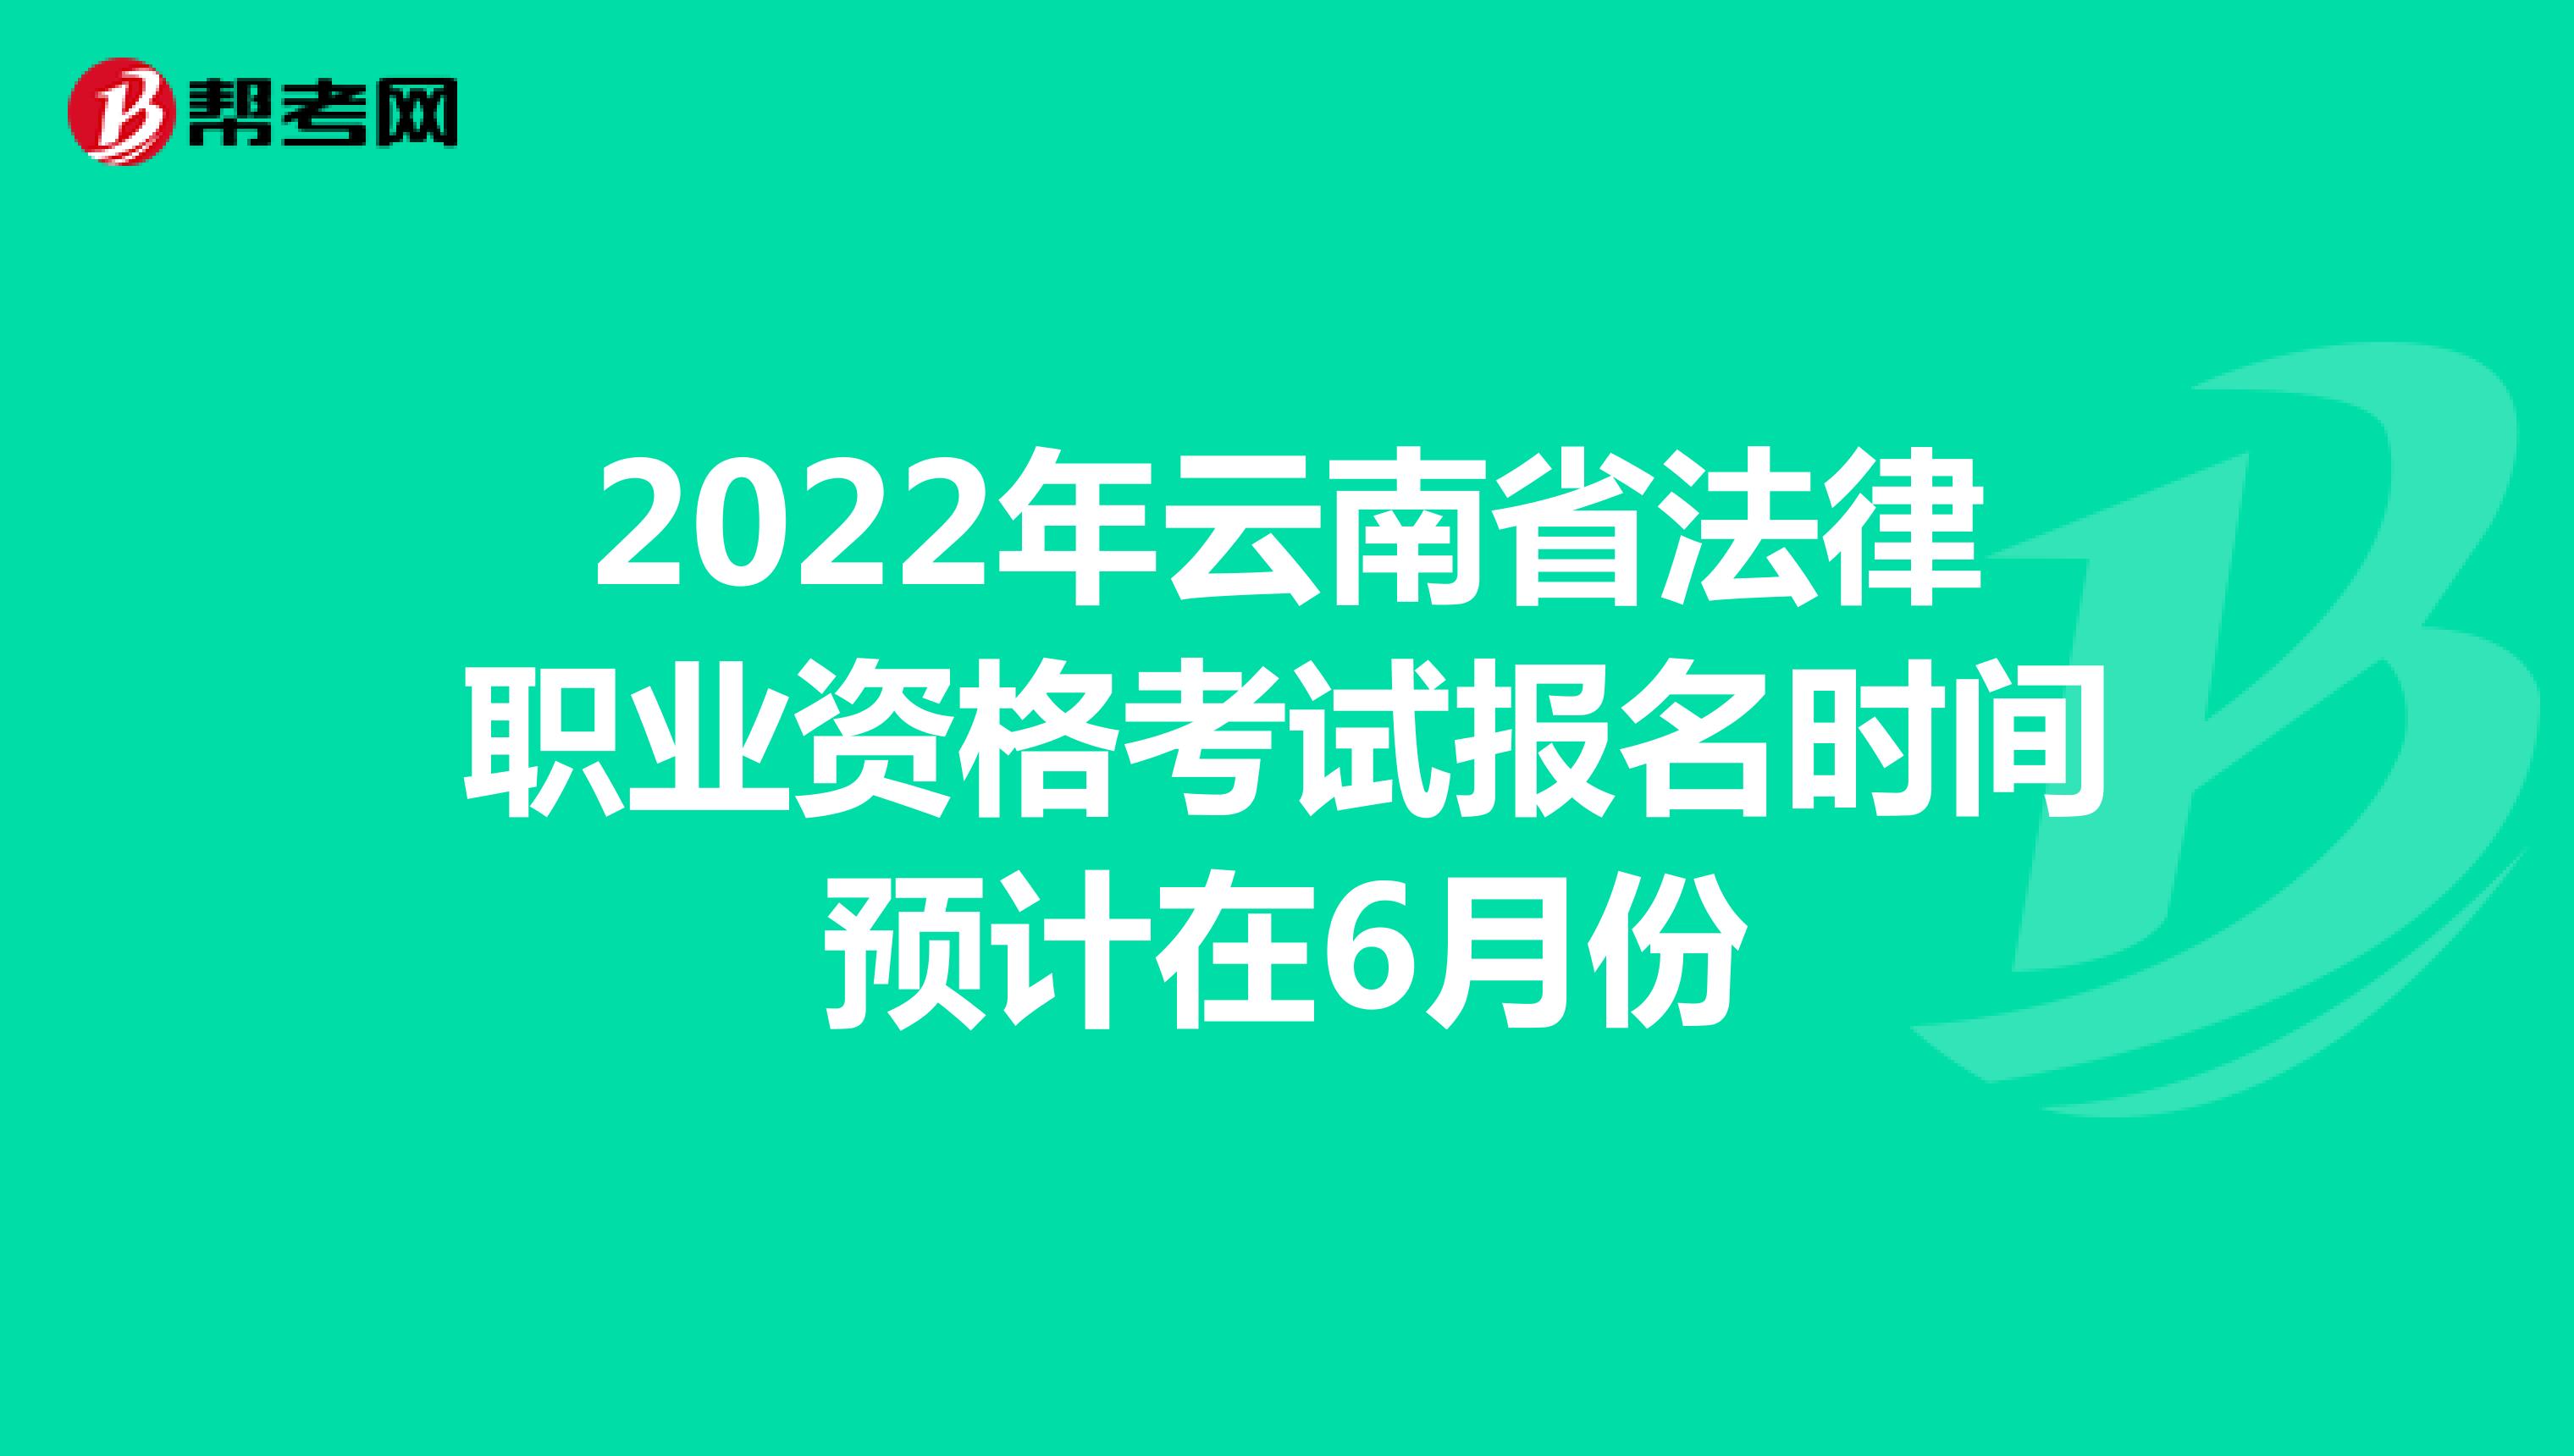 2022年云南省法律职业资格考试报名时间预计在6月份